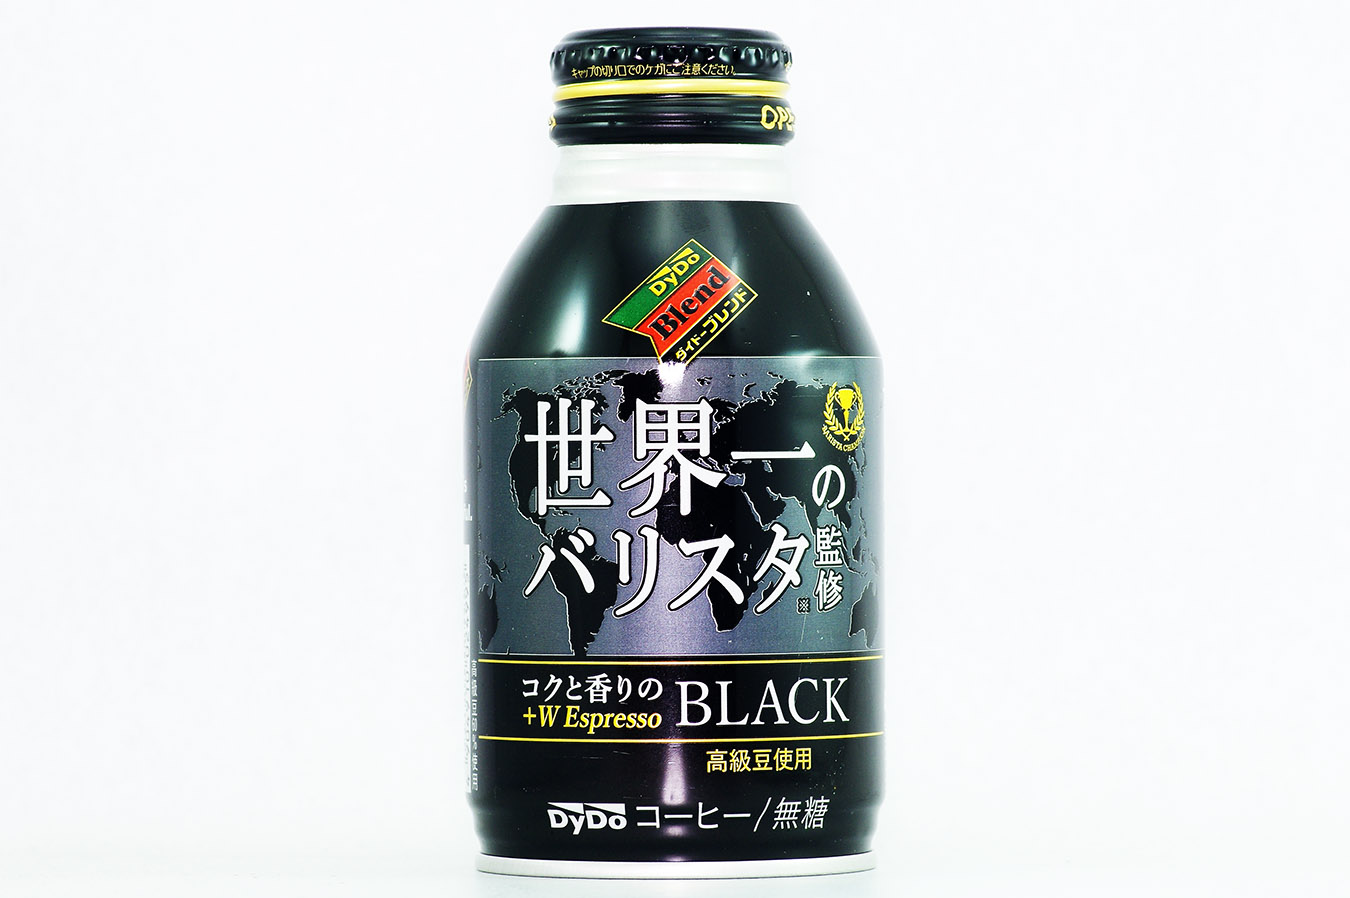 ダイドーブレンド BLACK 世界一のバリスタ監修 275gボトル缶 2016年3月